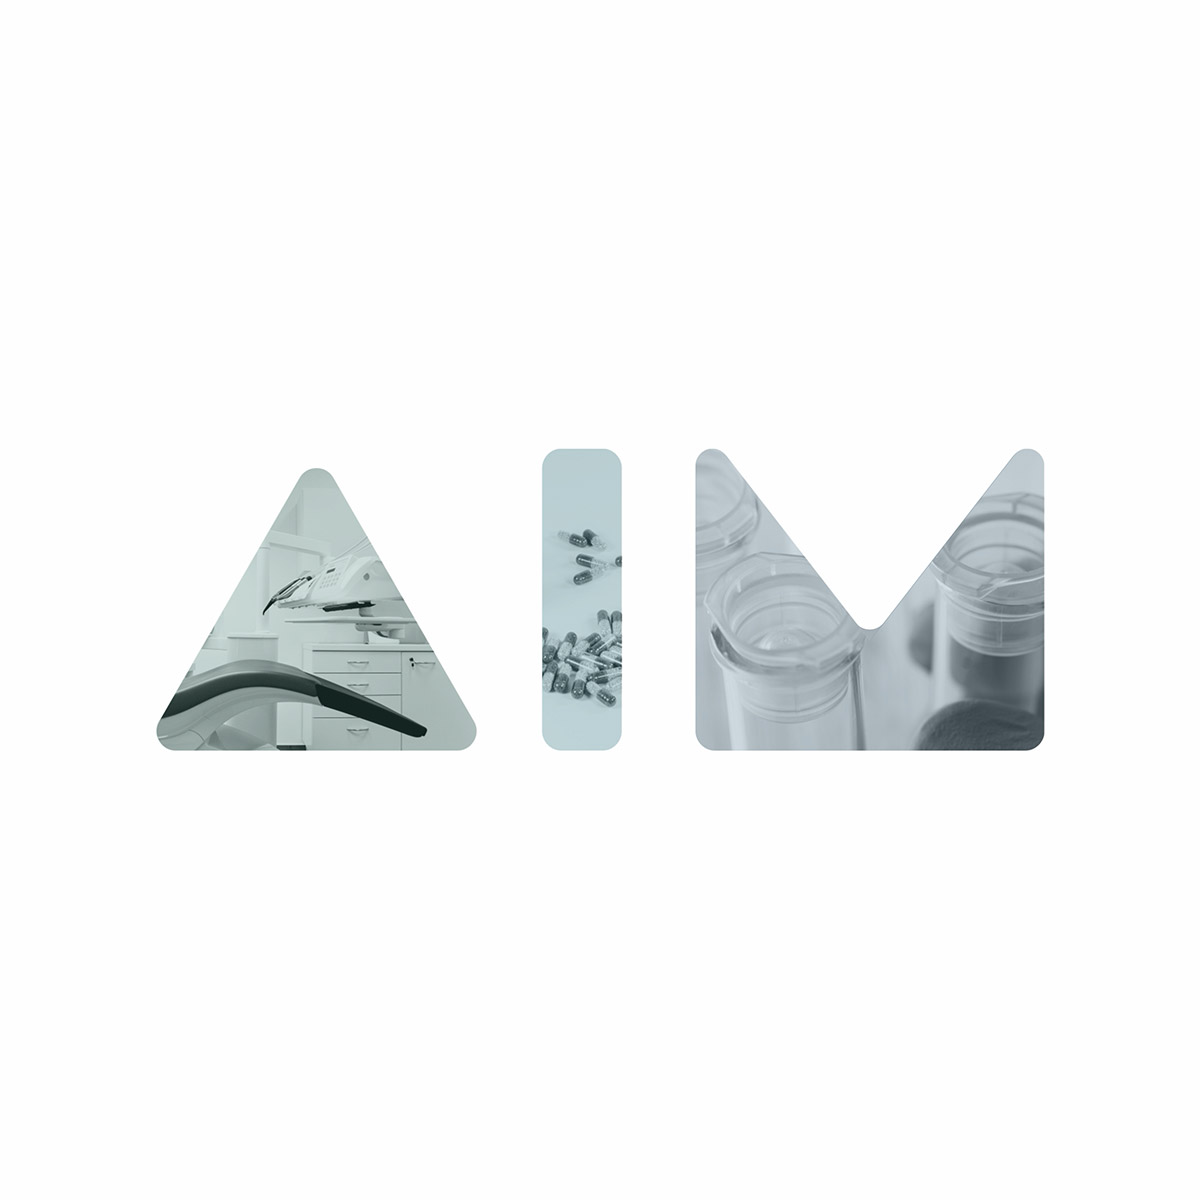 aim_logo